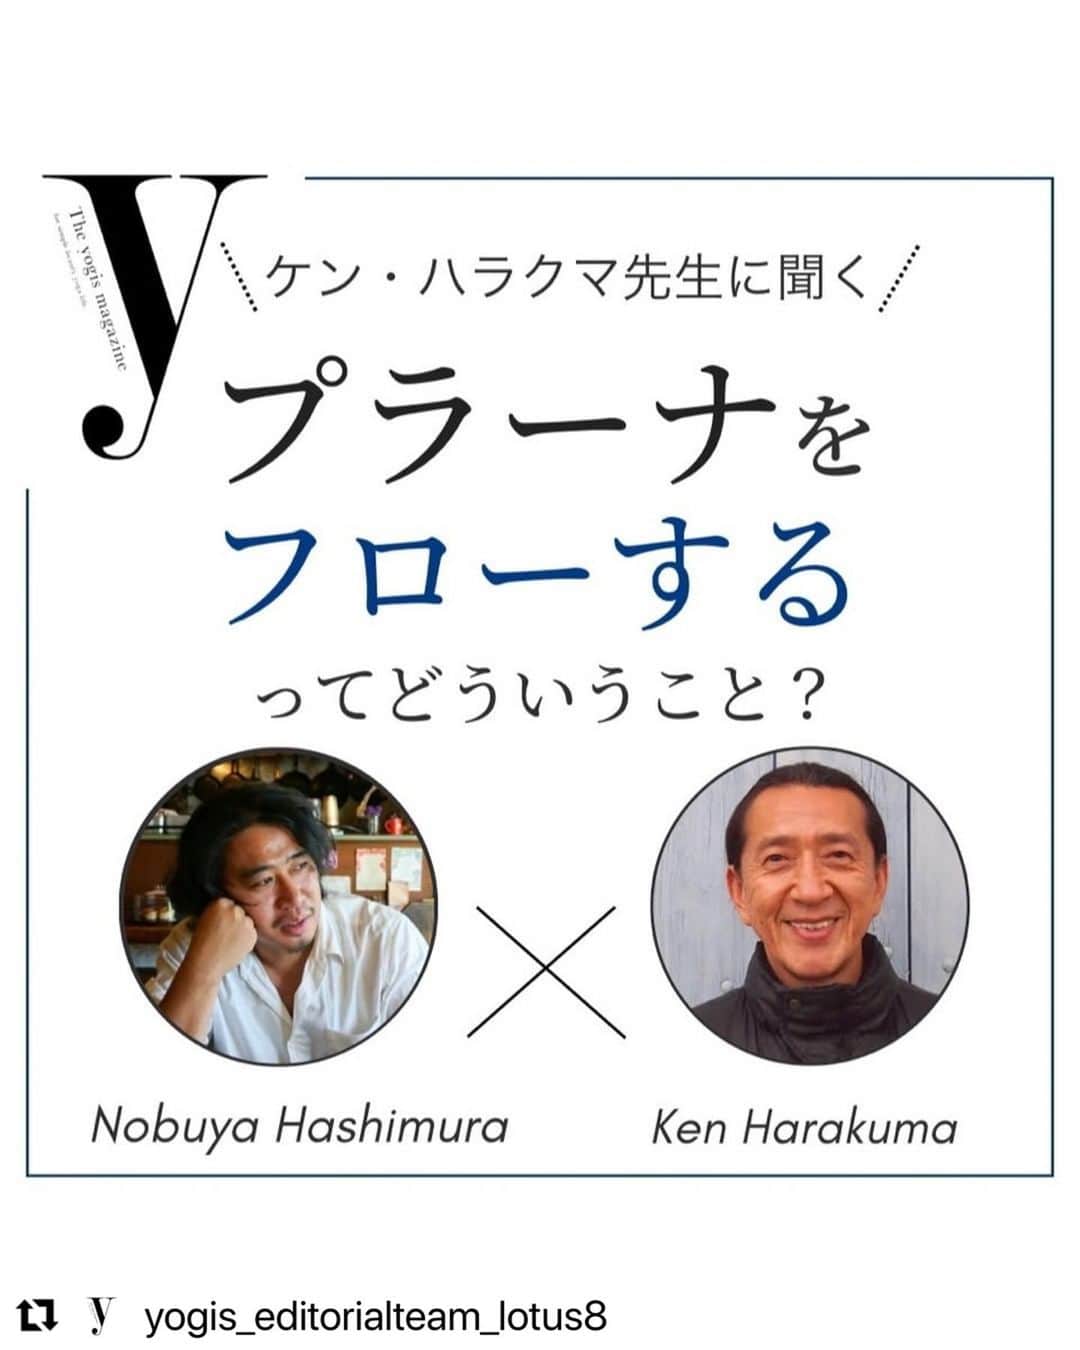 Ken Harakumaのインスタグラム